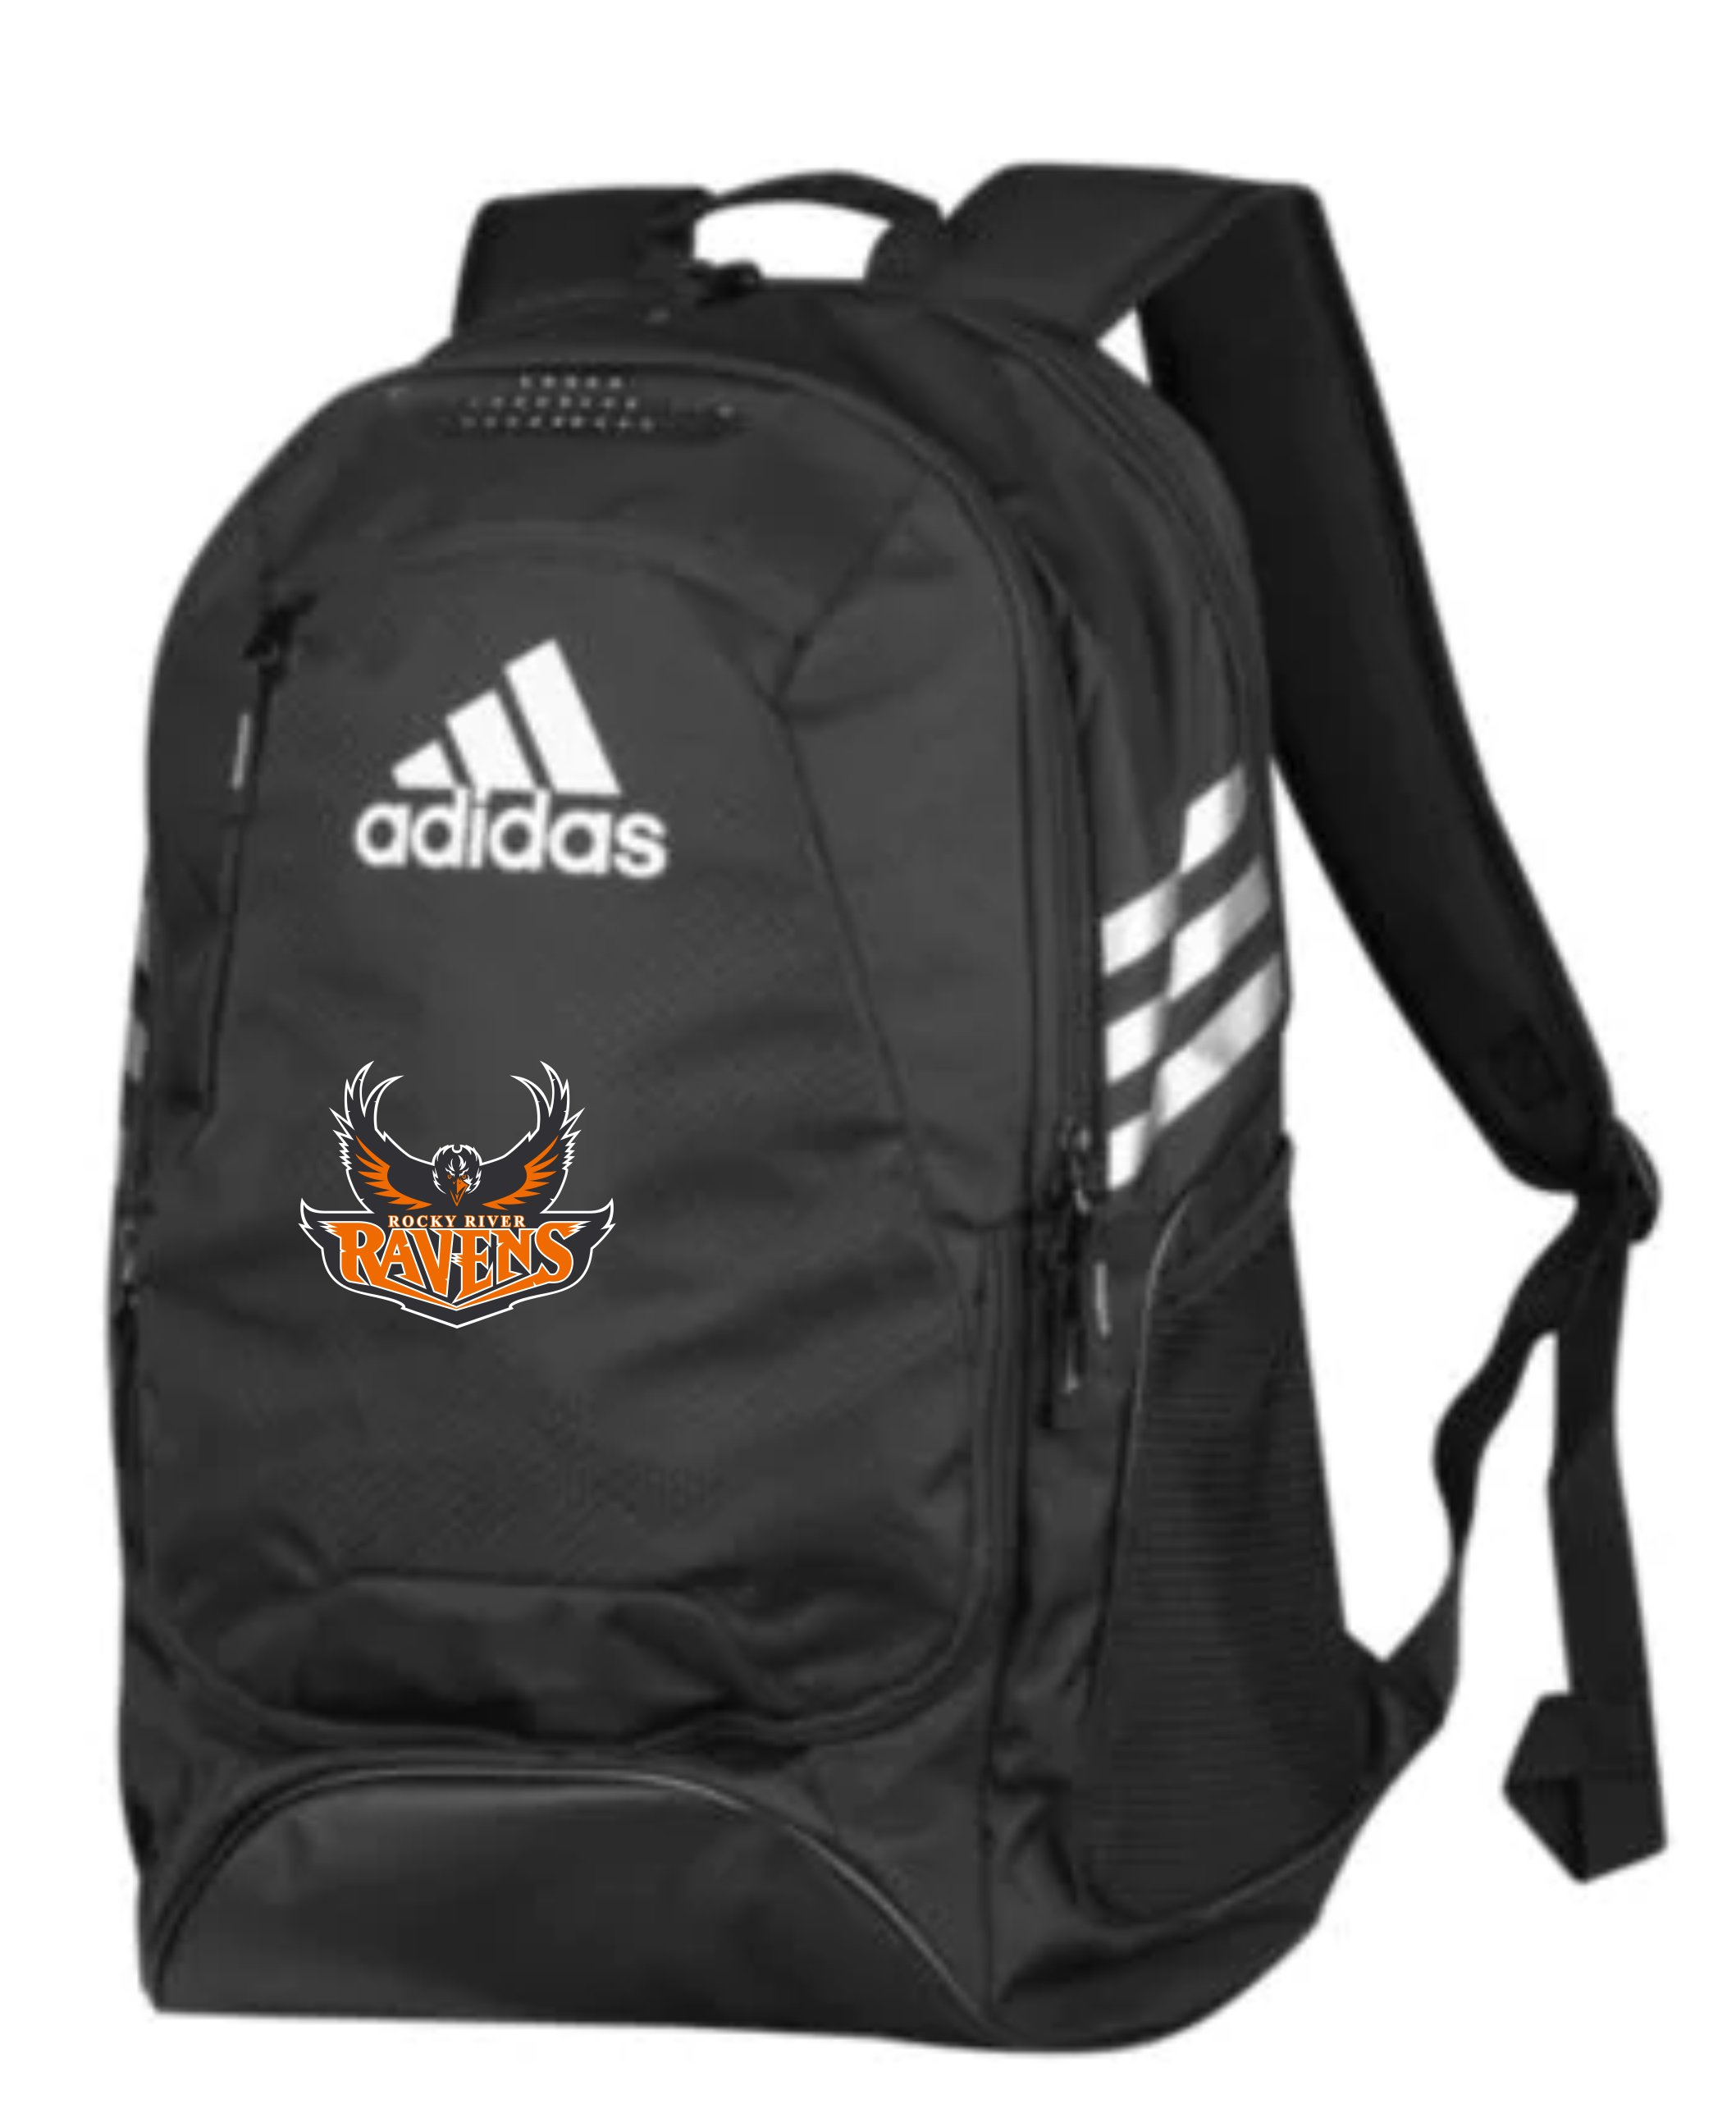 Adidas Stadium II Team Backpack